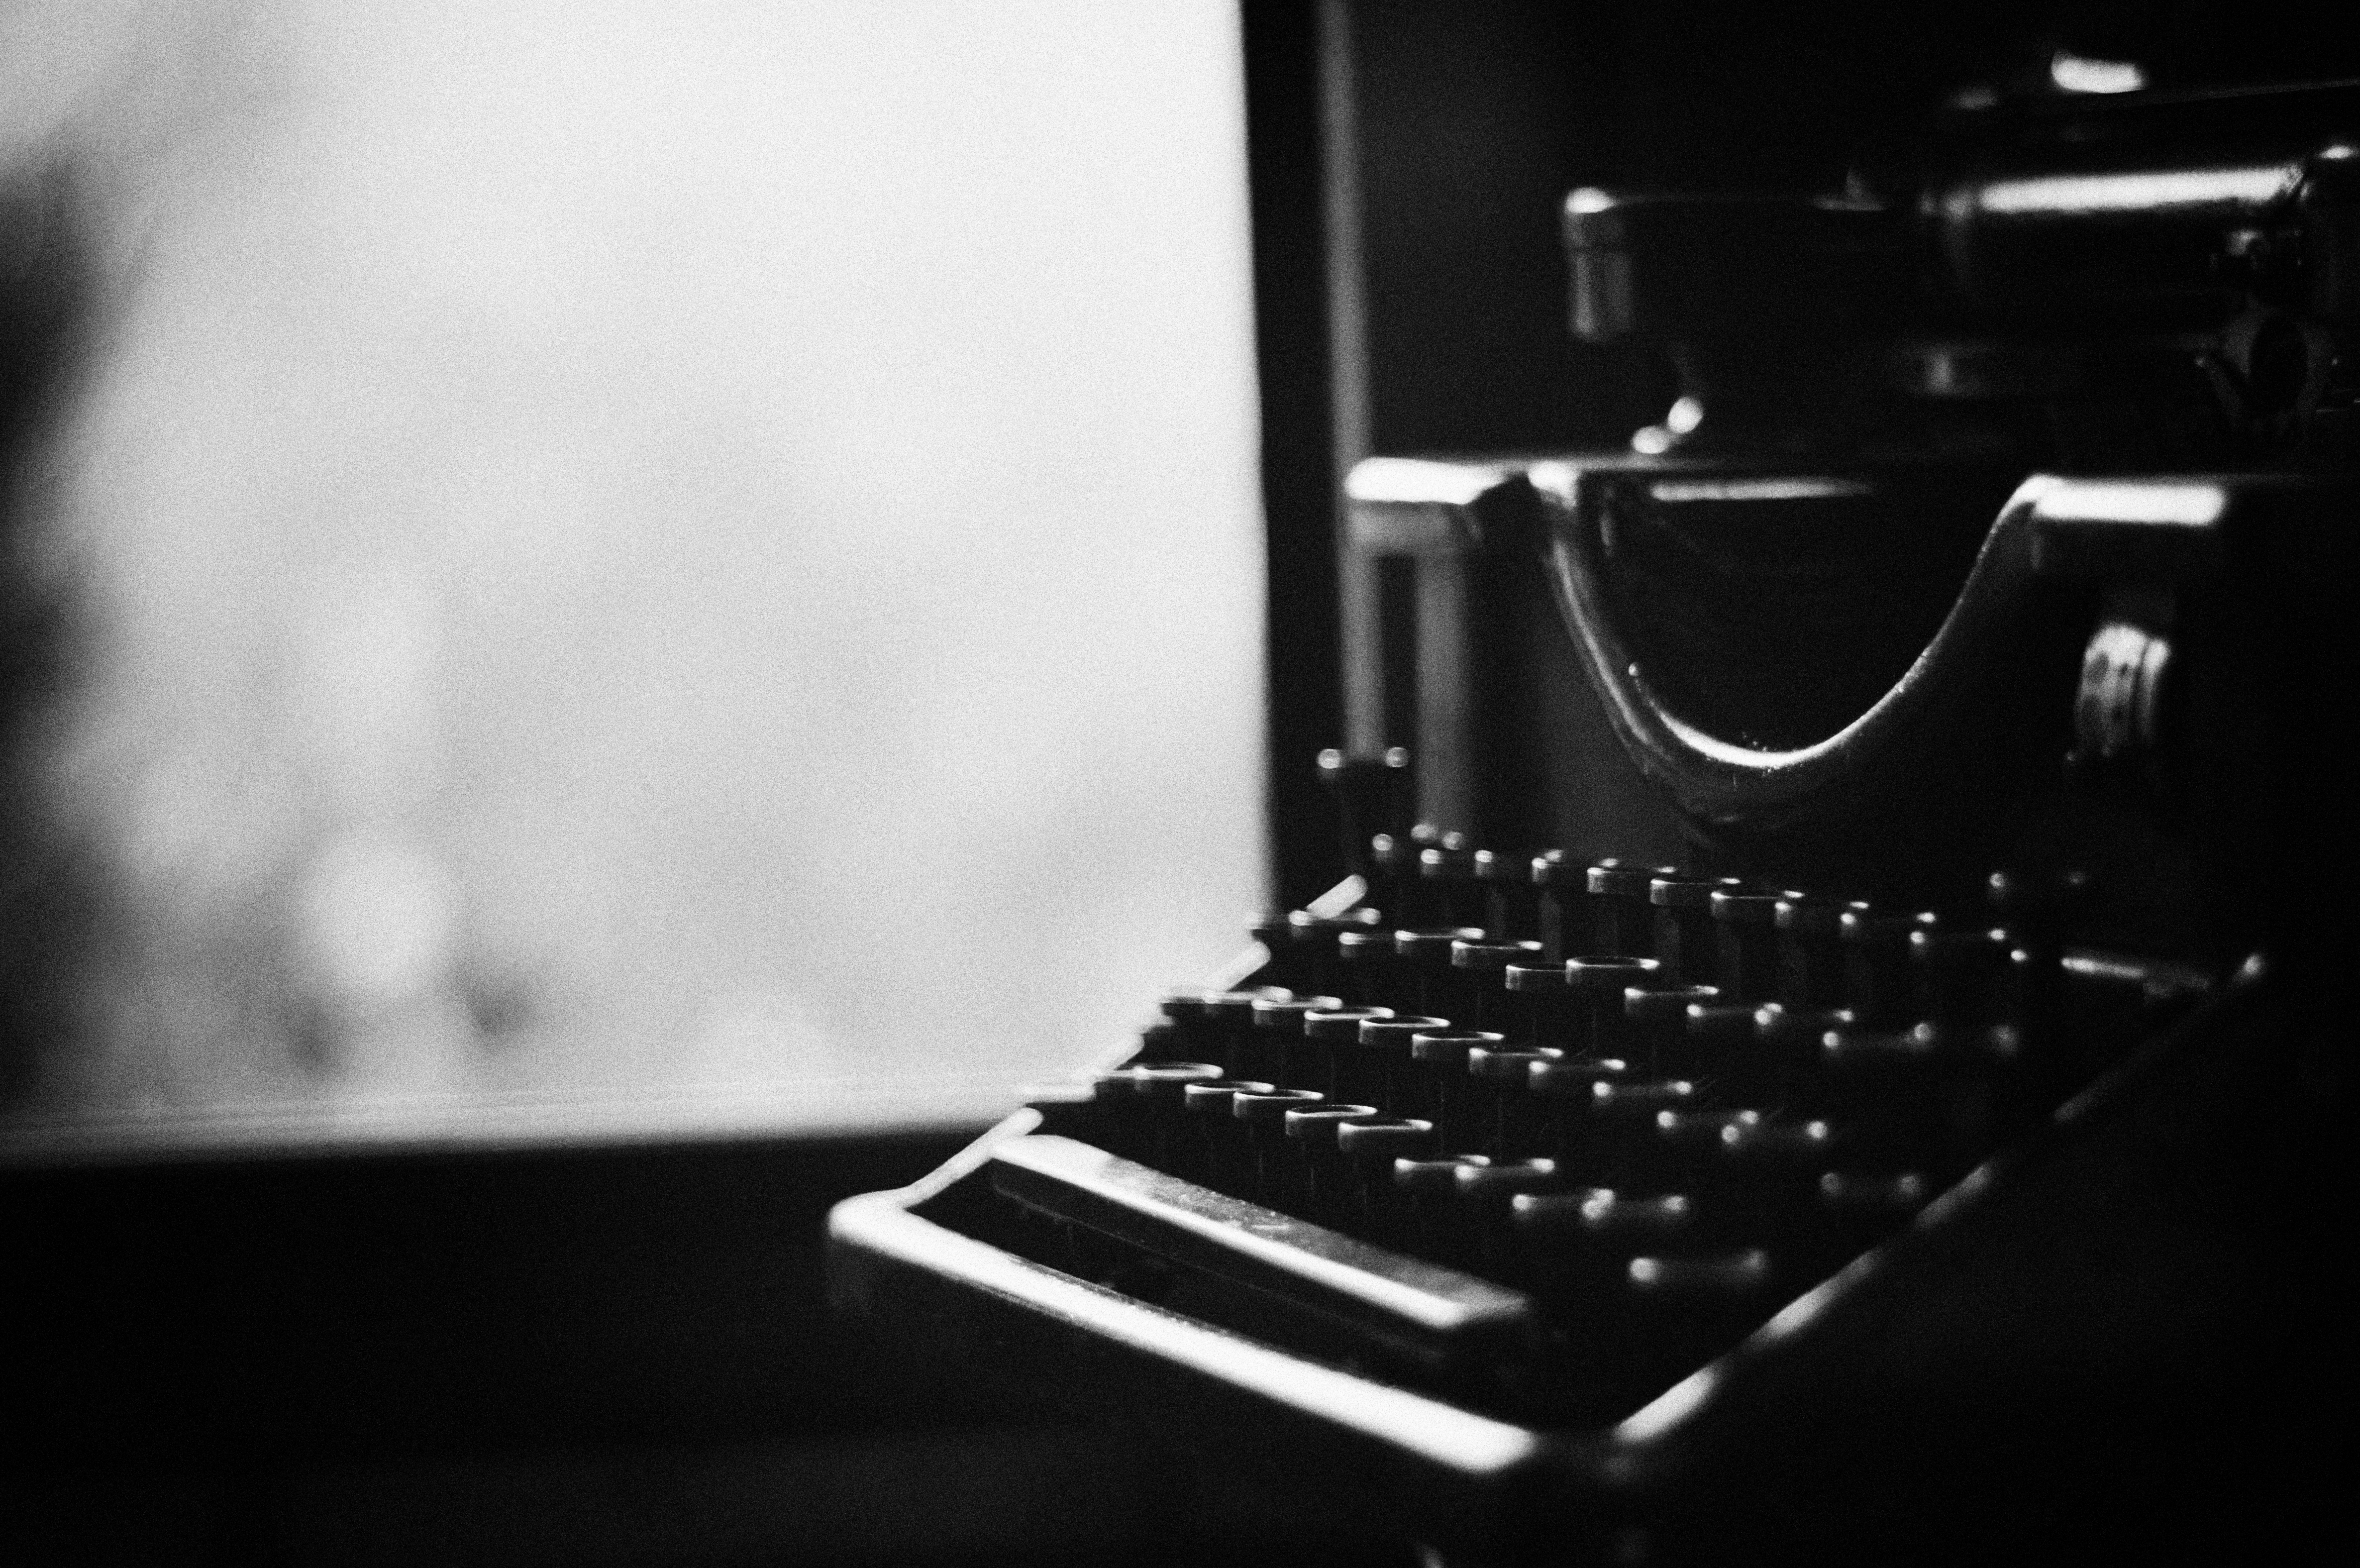 Typewriter service